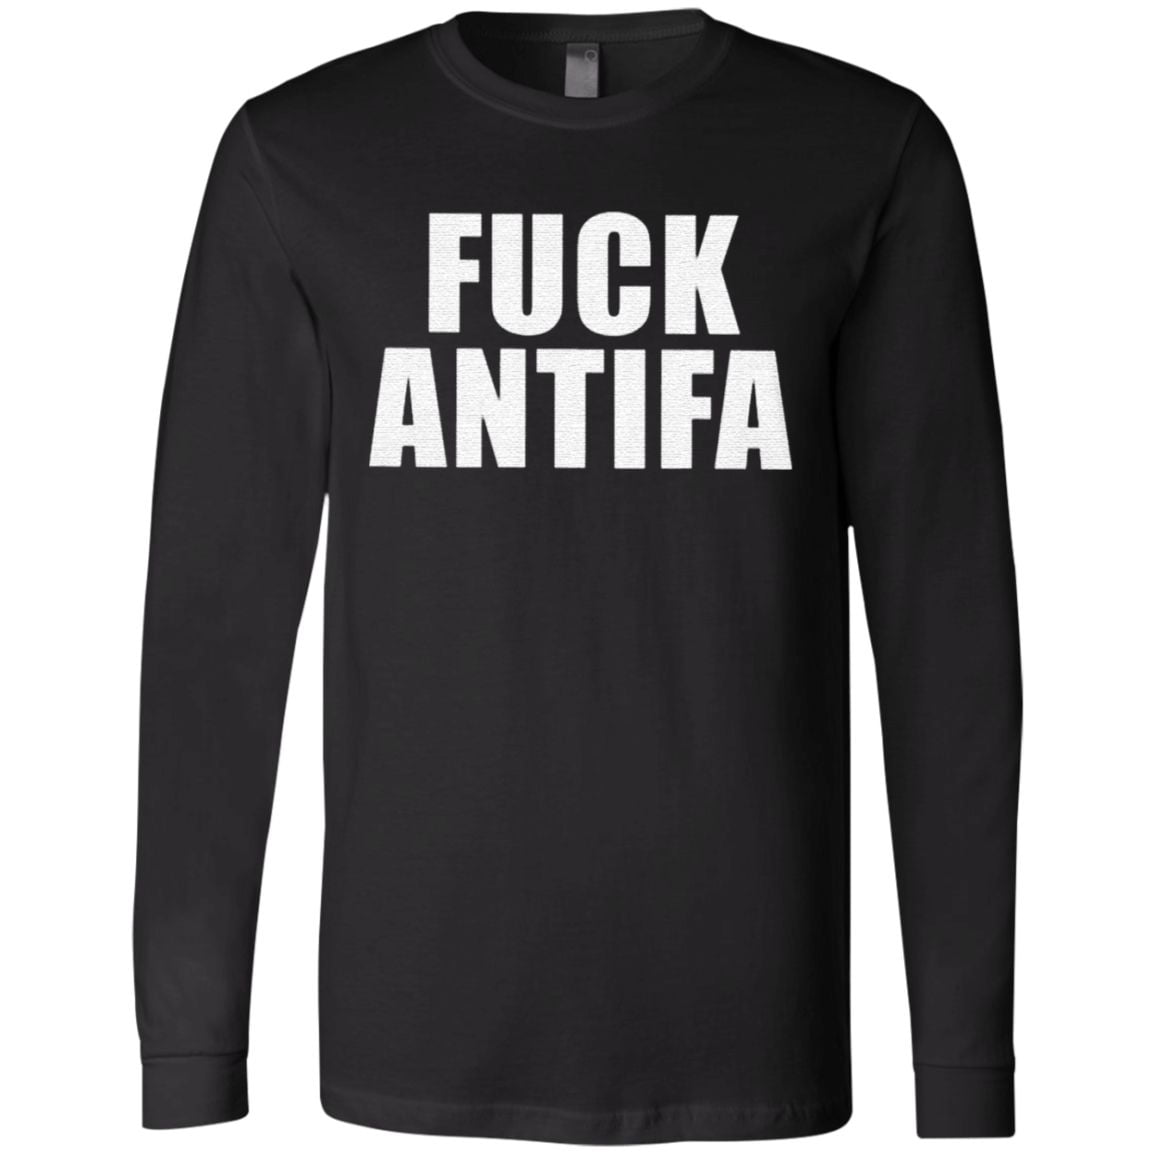 Fuck Antifa Shirt